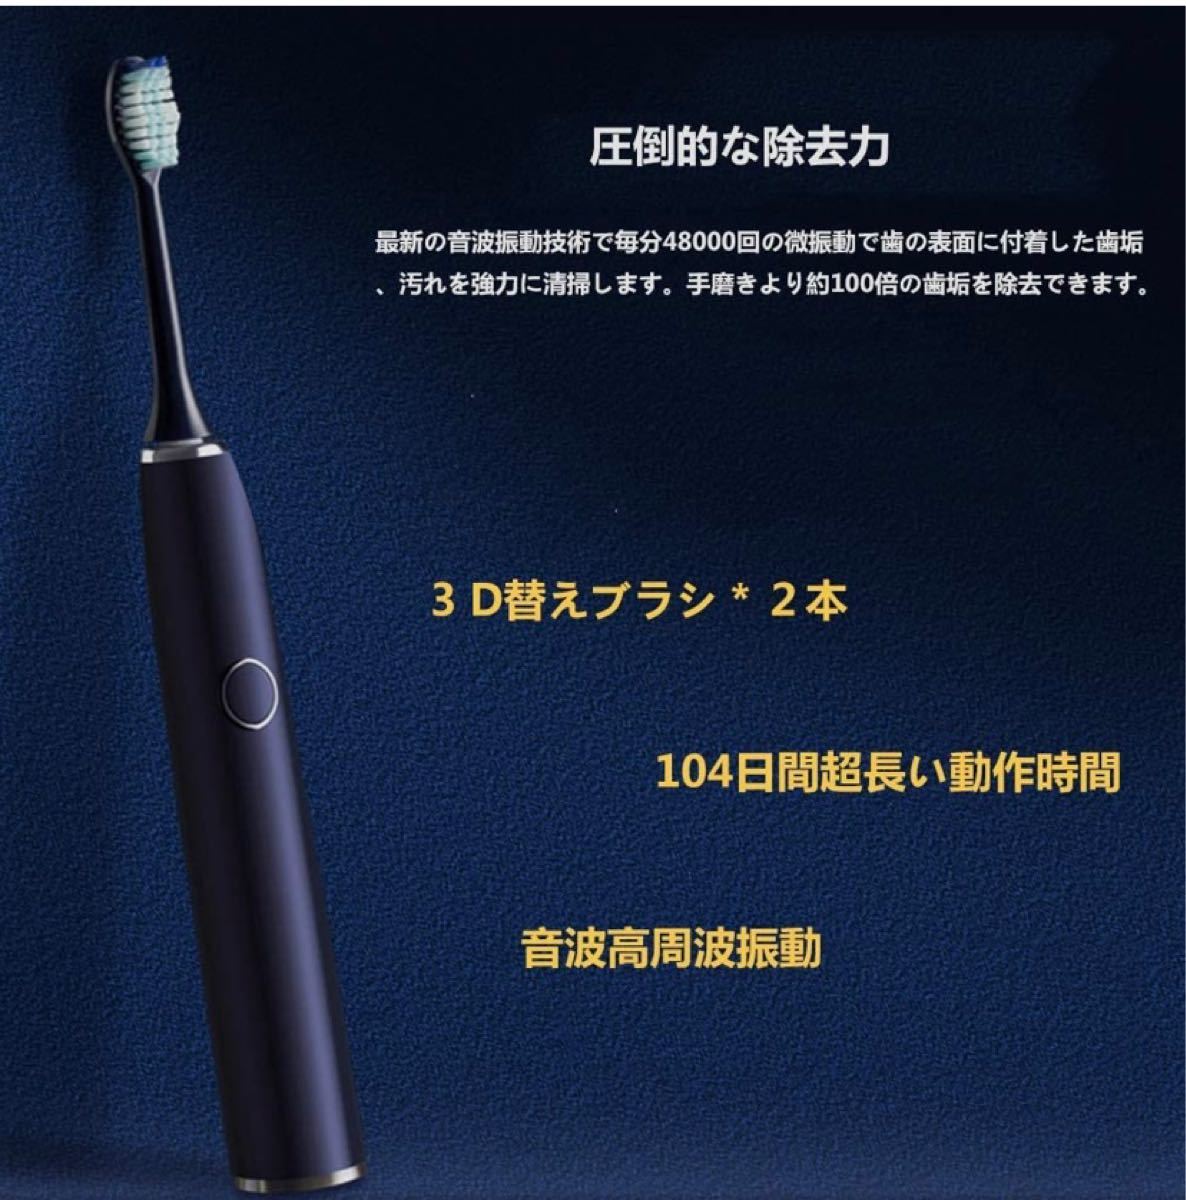 【新品・送料無料】電動歯ブラシ 超音波震度 歯石除去 充電式 振動